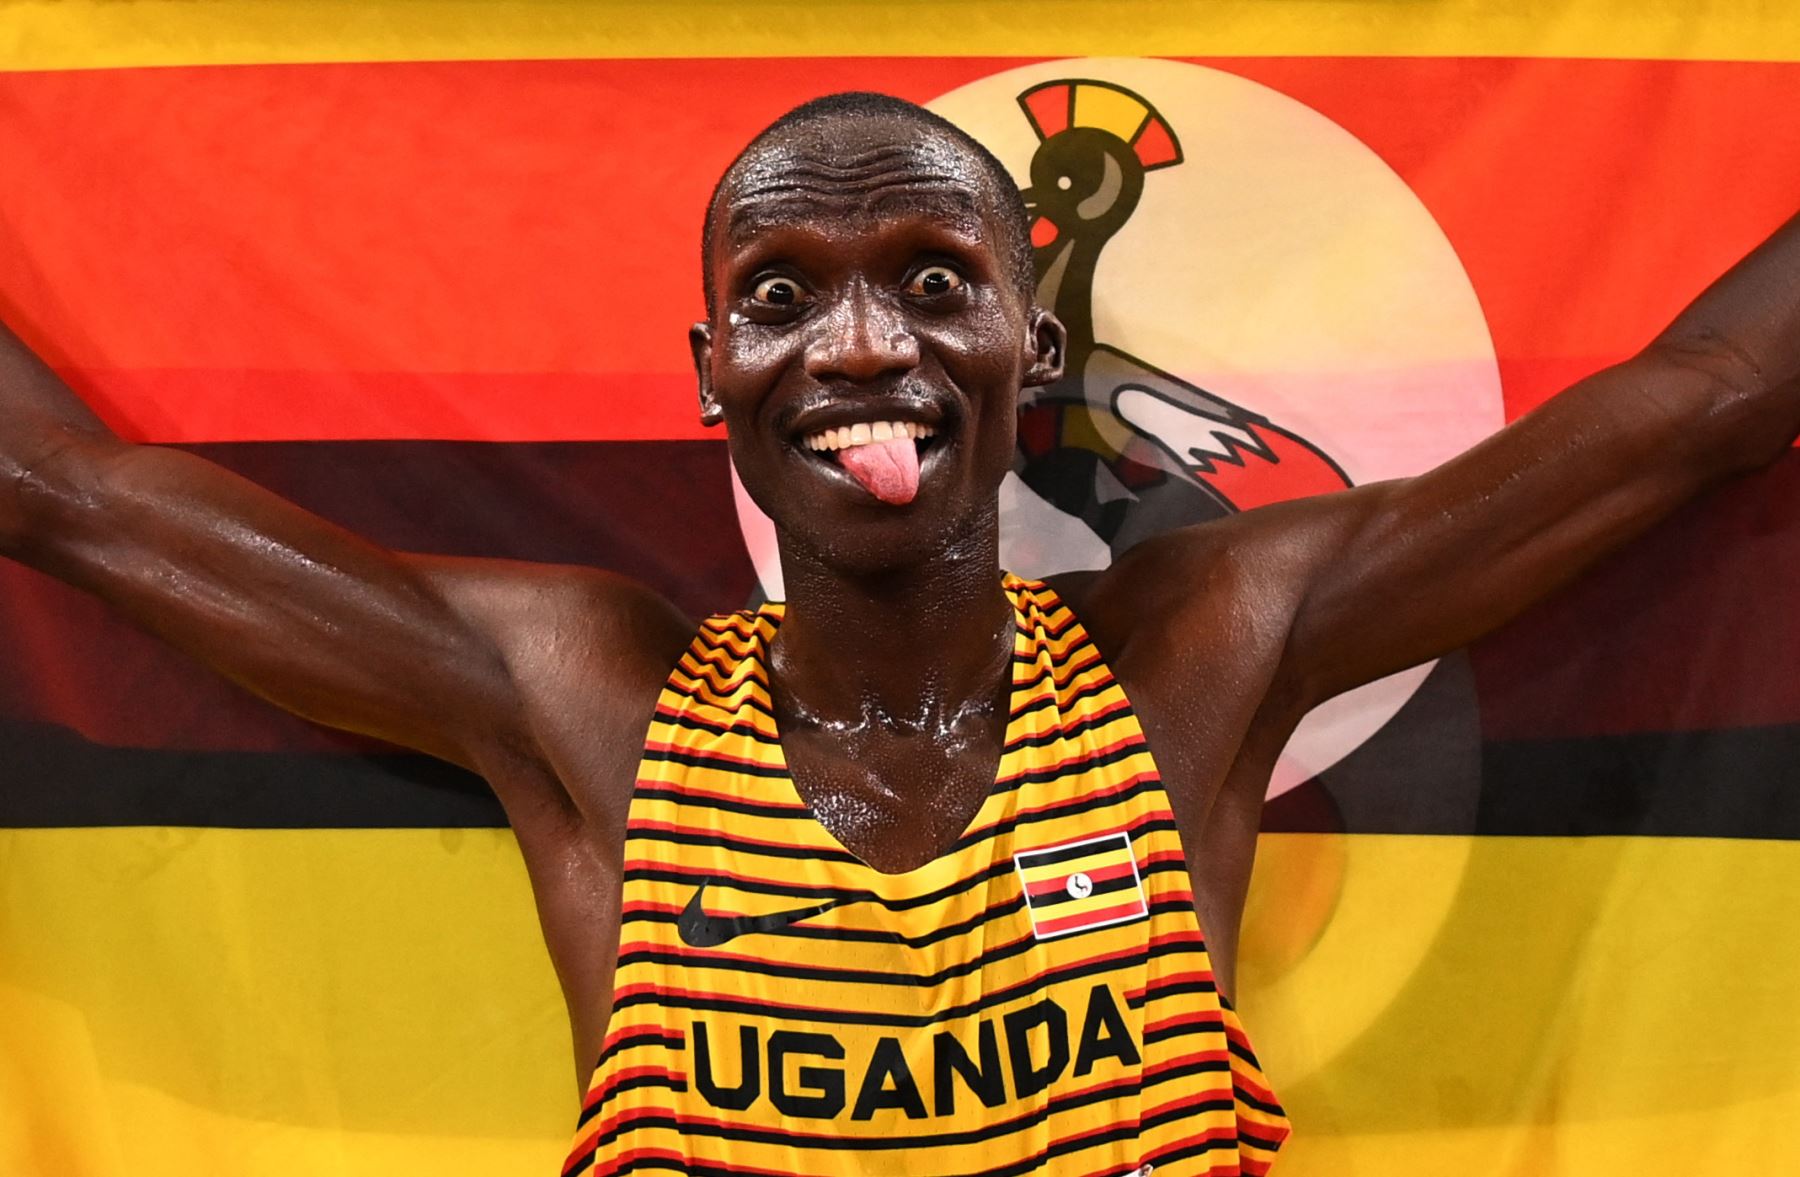 Joshua Cheptegei de Uganda celebra tras obtener la medalla de oro durante la final de los 5000 metros. Foto: AFP